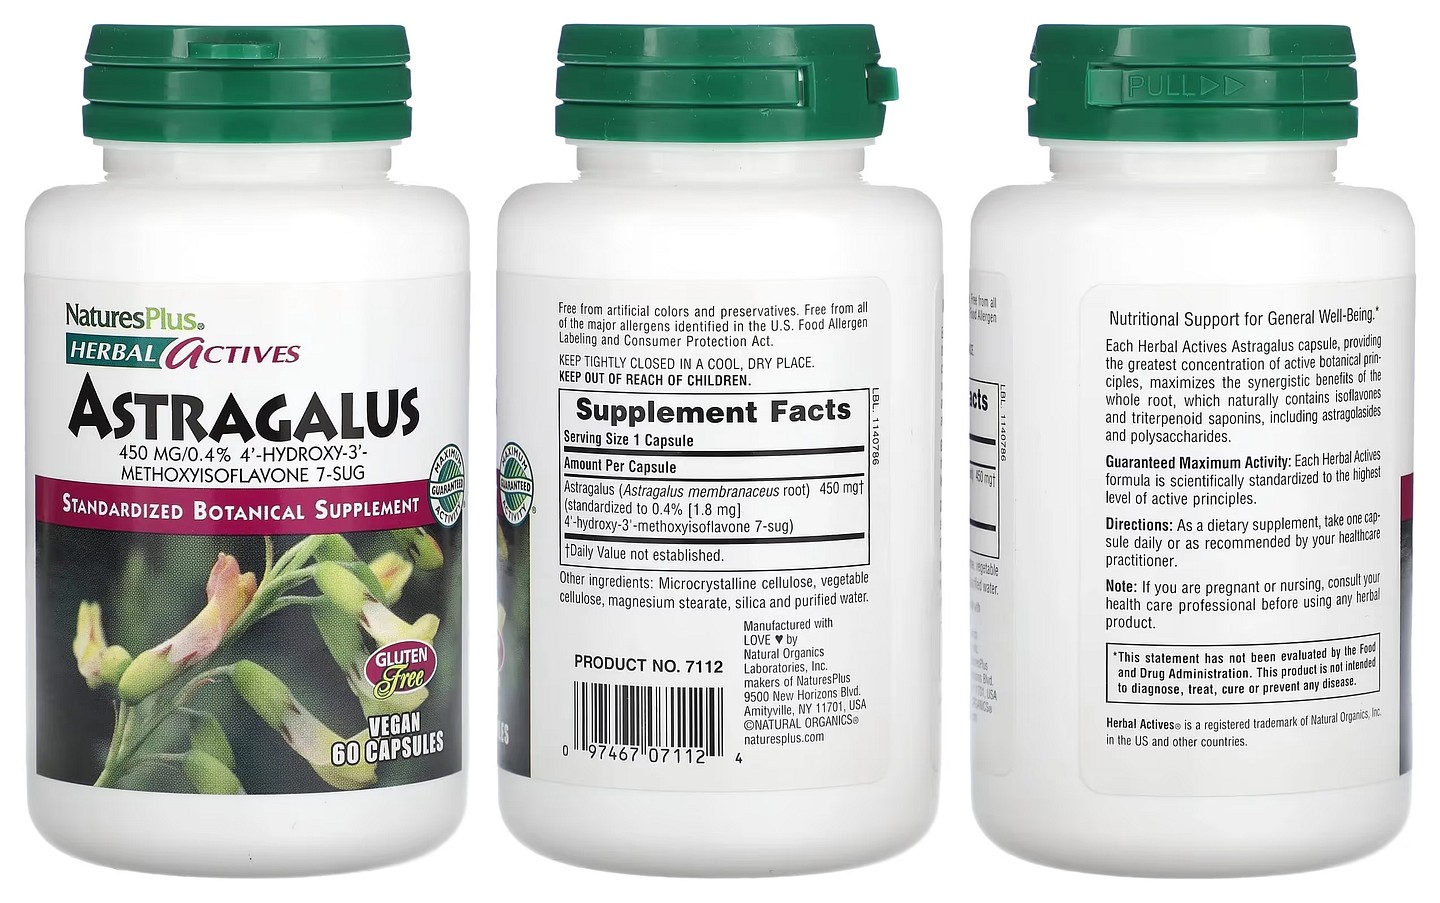 NaturesPlus, Herbal Actives packaging